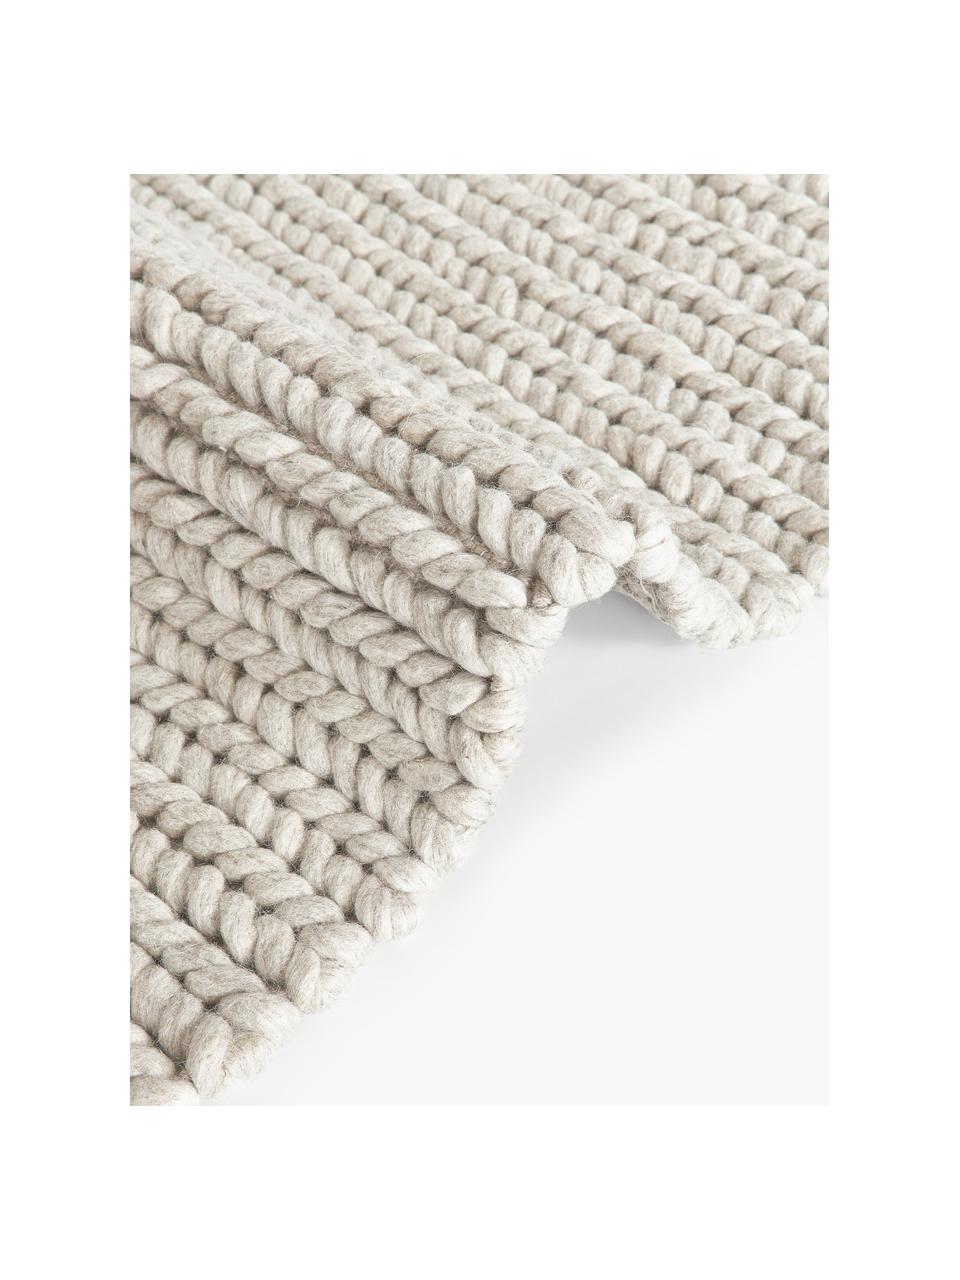 Alfombra de lana texturizada Bruna, 100% lana con certificado RWS

Las alfombras de lana se pueden aflojar durante las primeras semanas de uso, la pelusa se reduce con el uso diario, Beige, An 80 x L 150 cm (Tamaño XS)